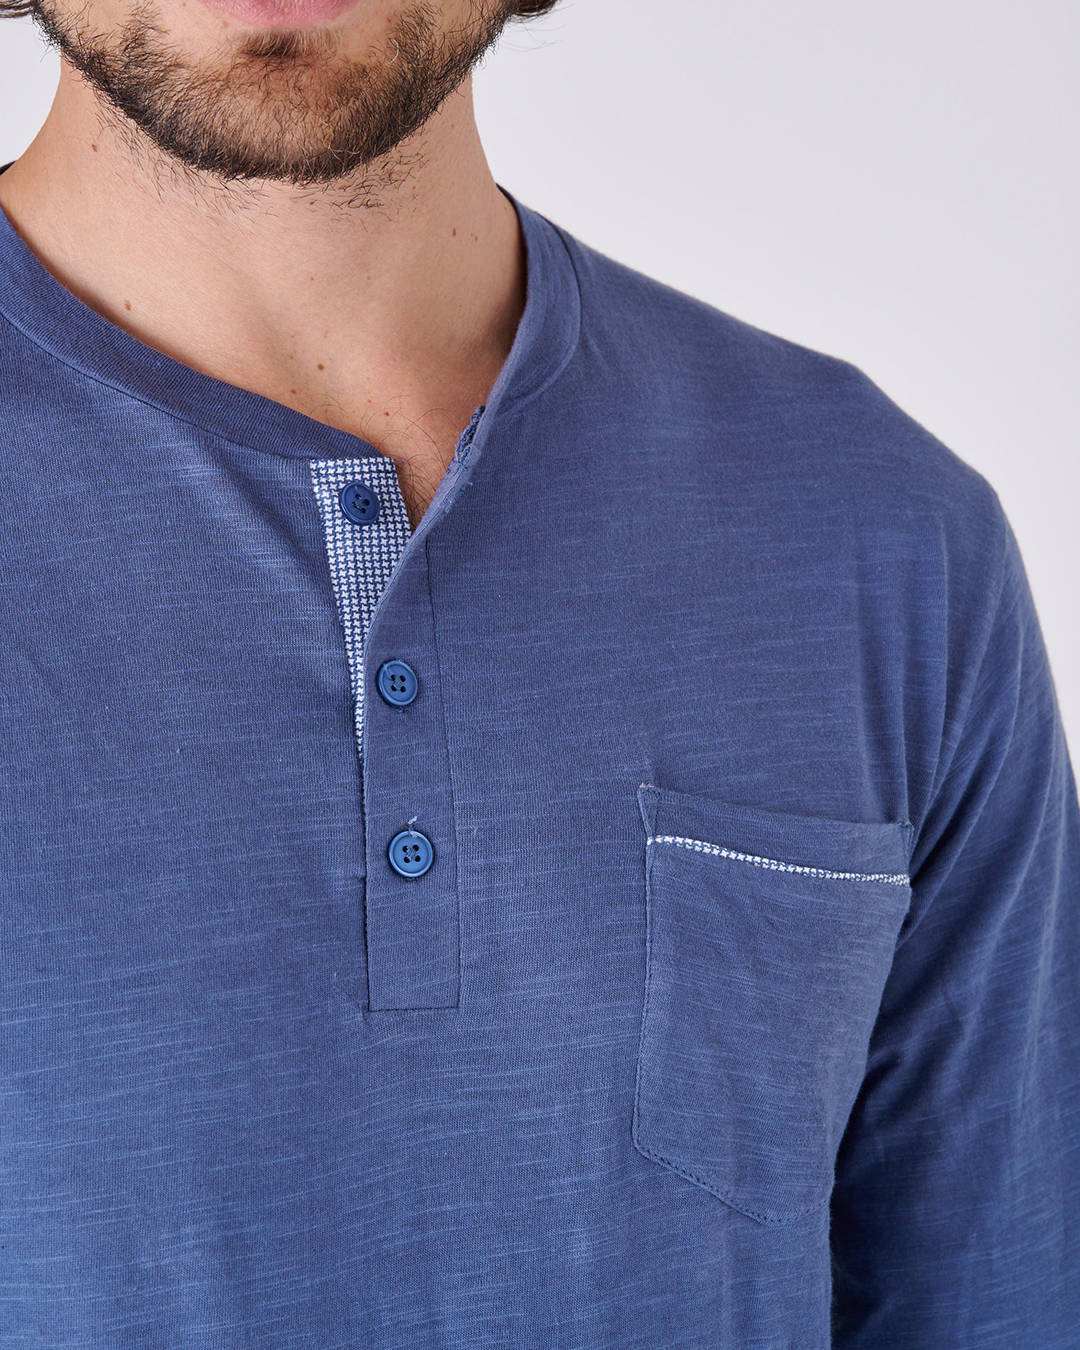 Dettaglio colletto del pigiama lungo blu da uomo calibrato